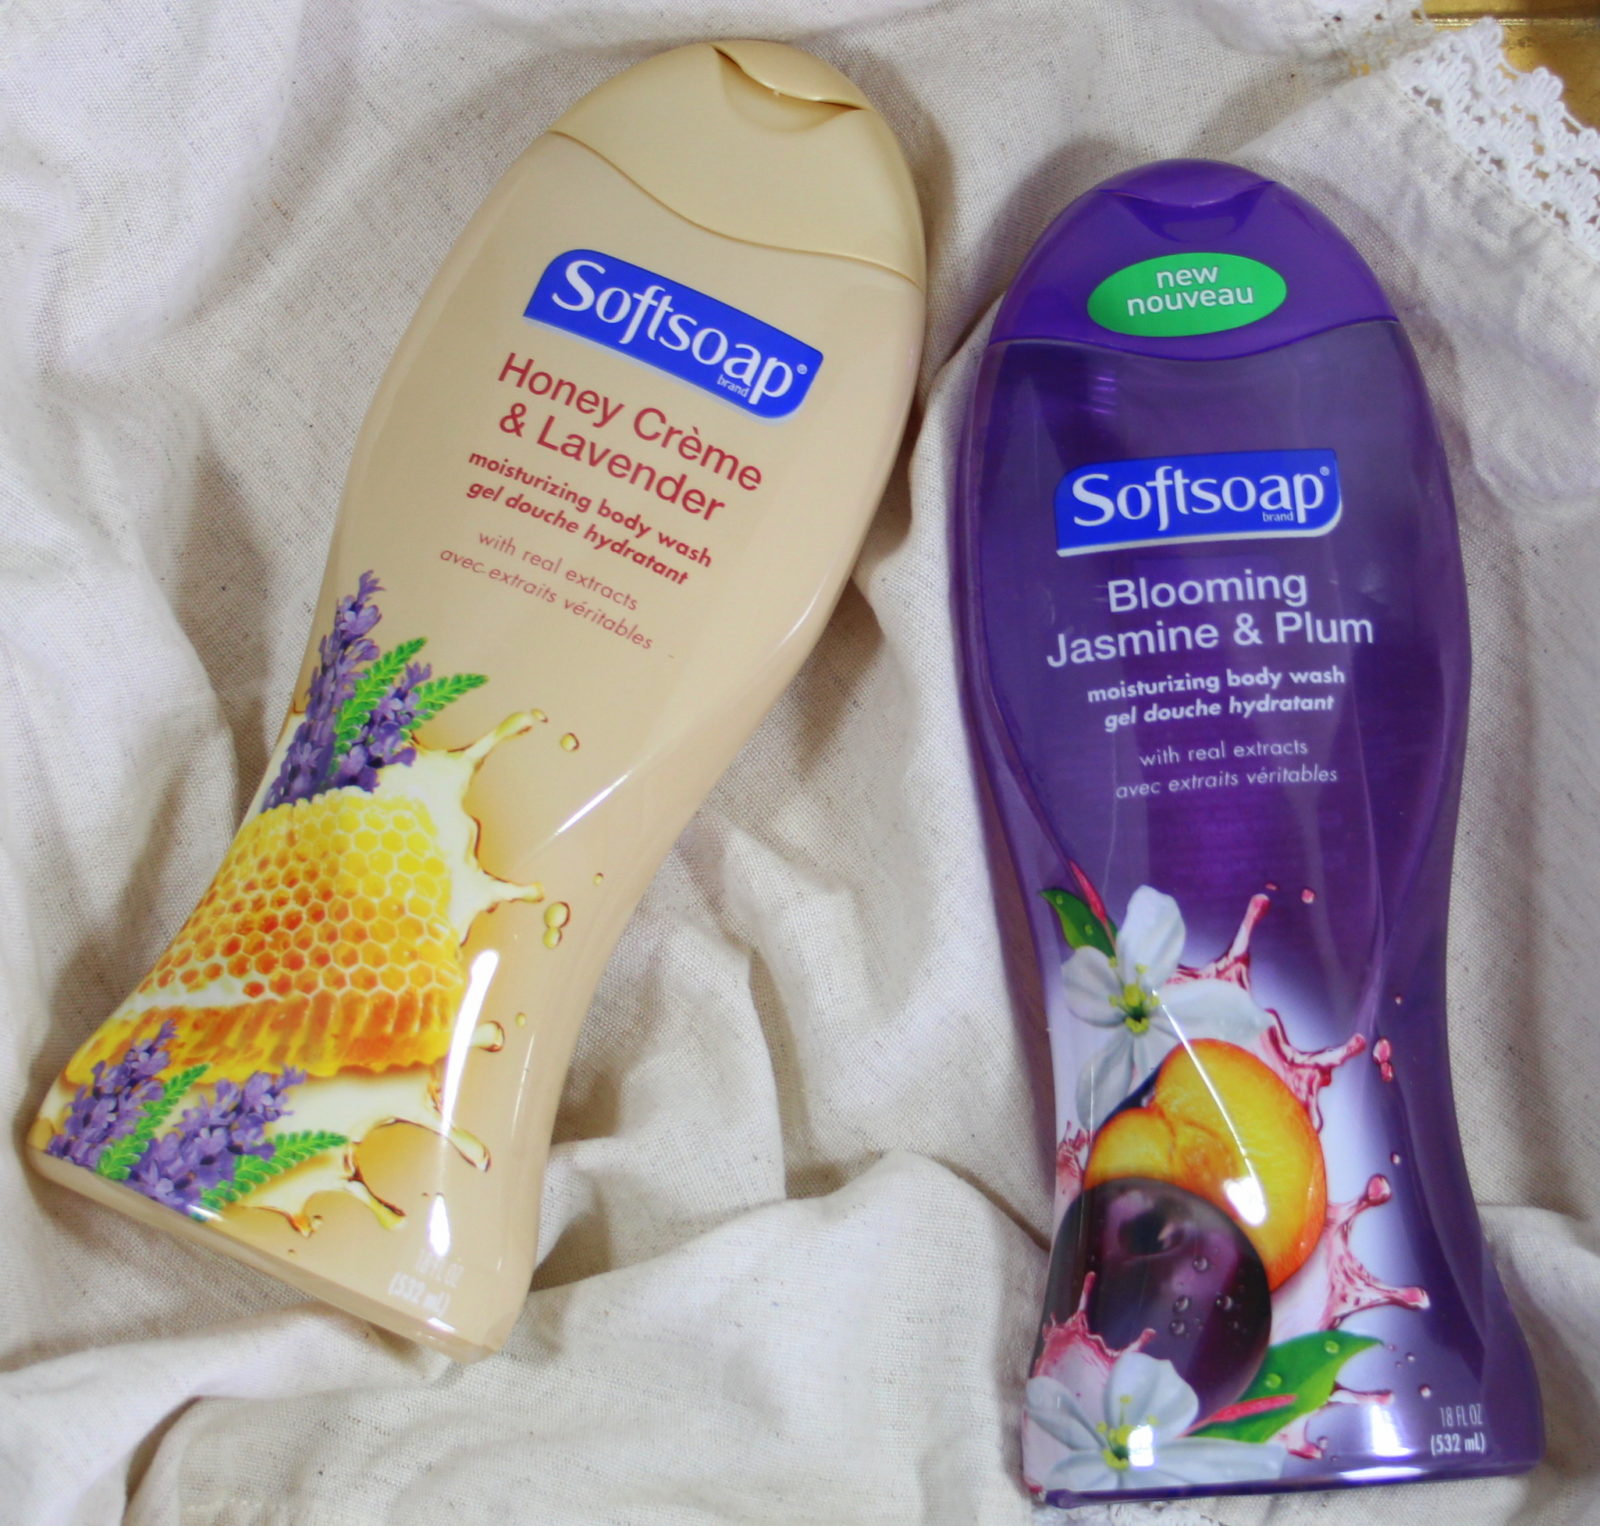 Softsoap Moisturizing Body Wash – Honey Creme & Lavender + Blooming Jasmine & Plum